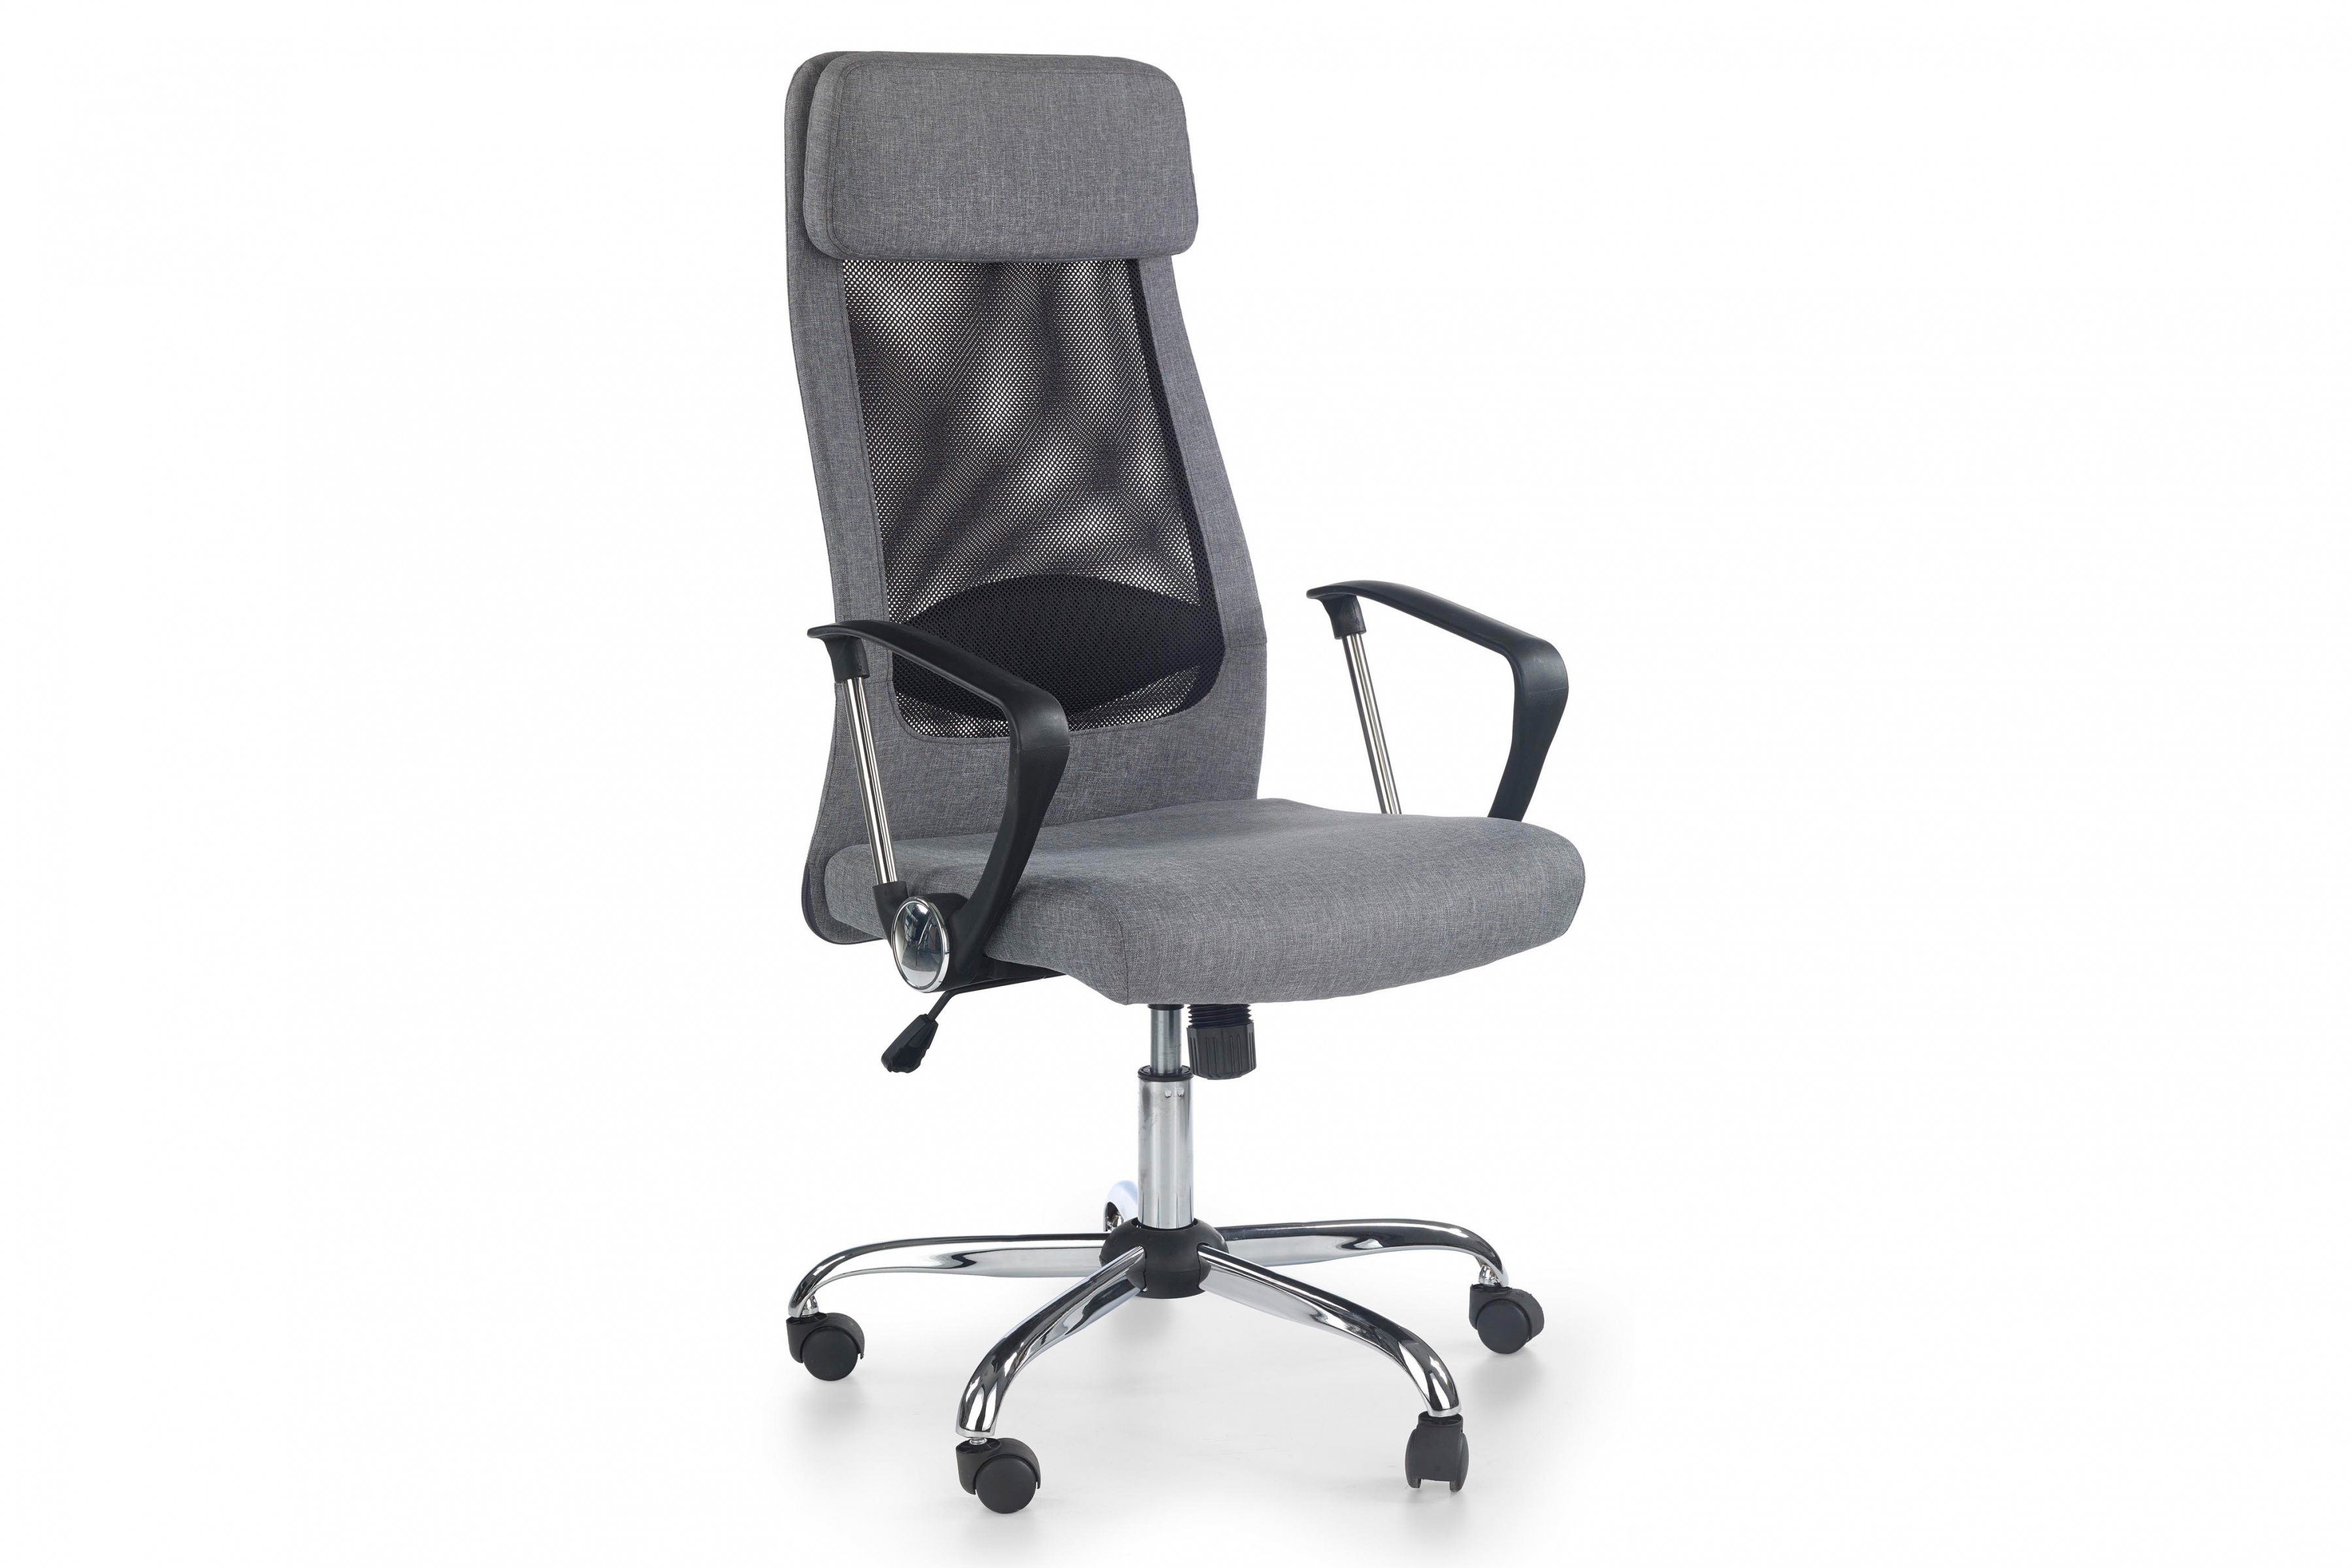 Kancelářská židle Zoom - popelová Kancelářske křeslo Zoom z podlokietnikami - Popelový